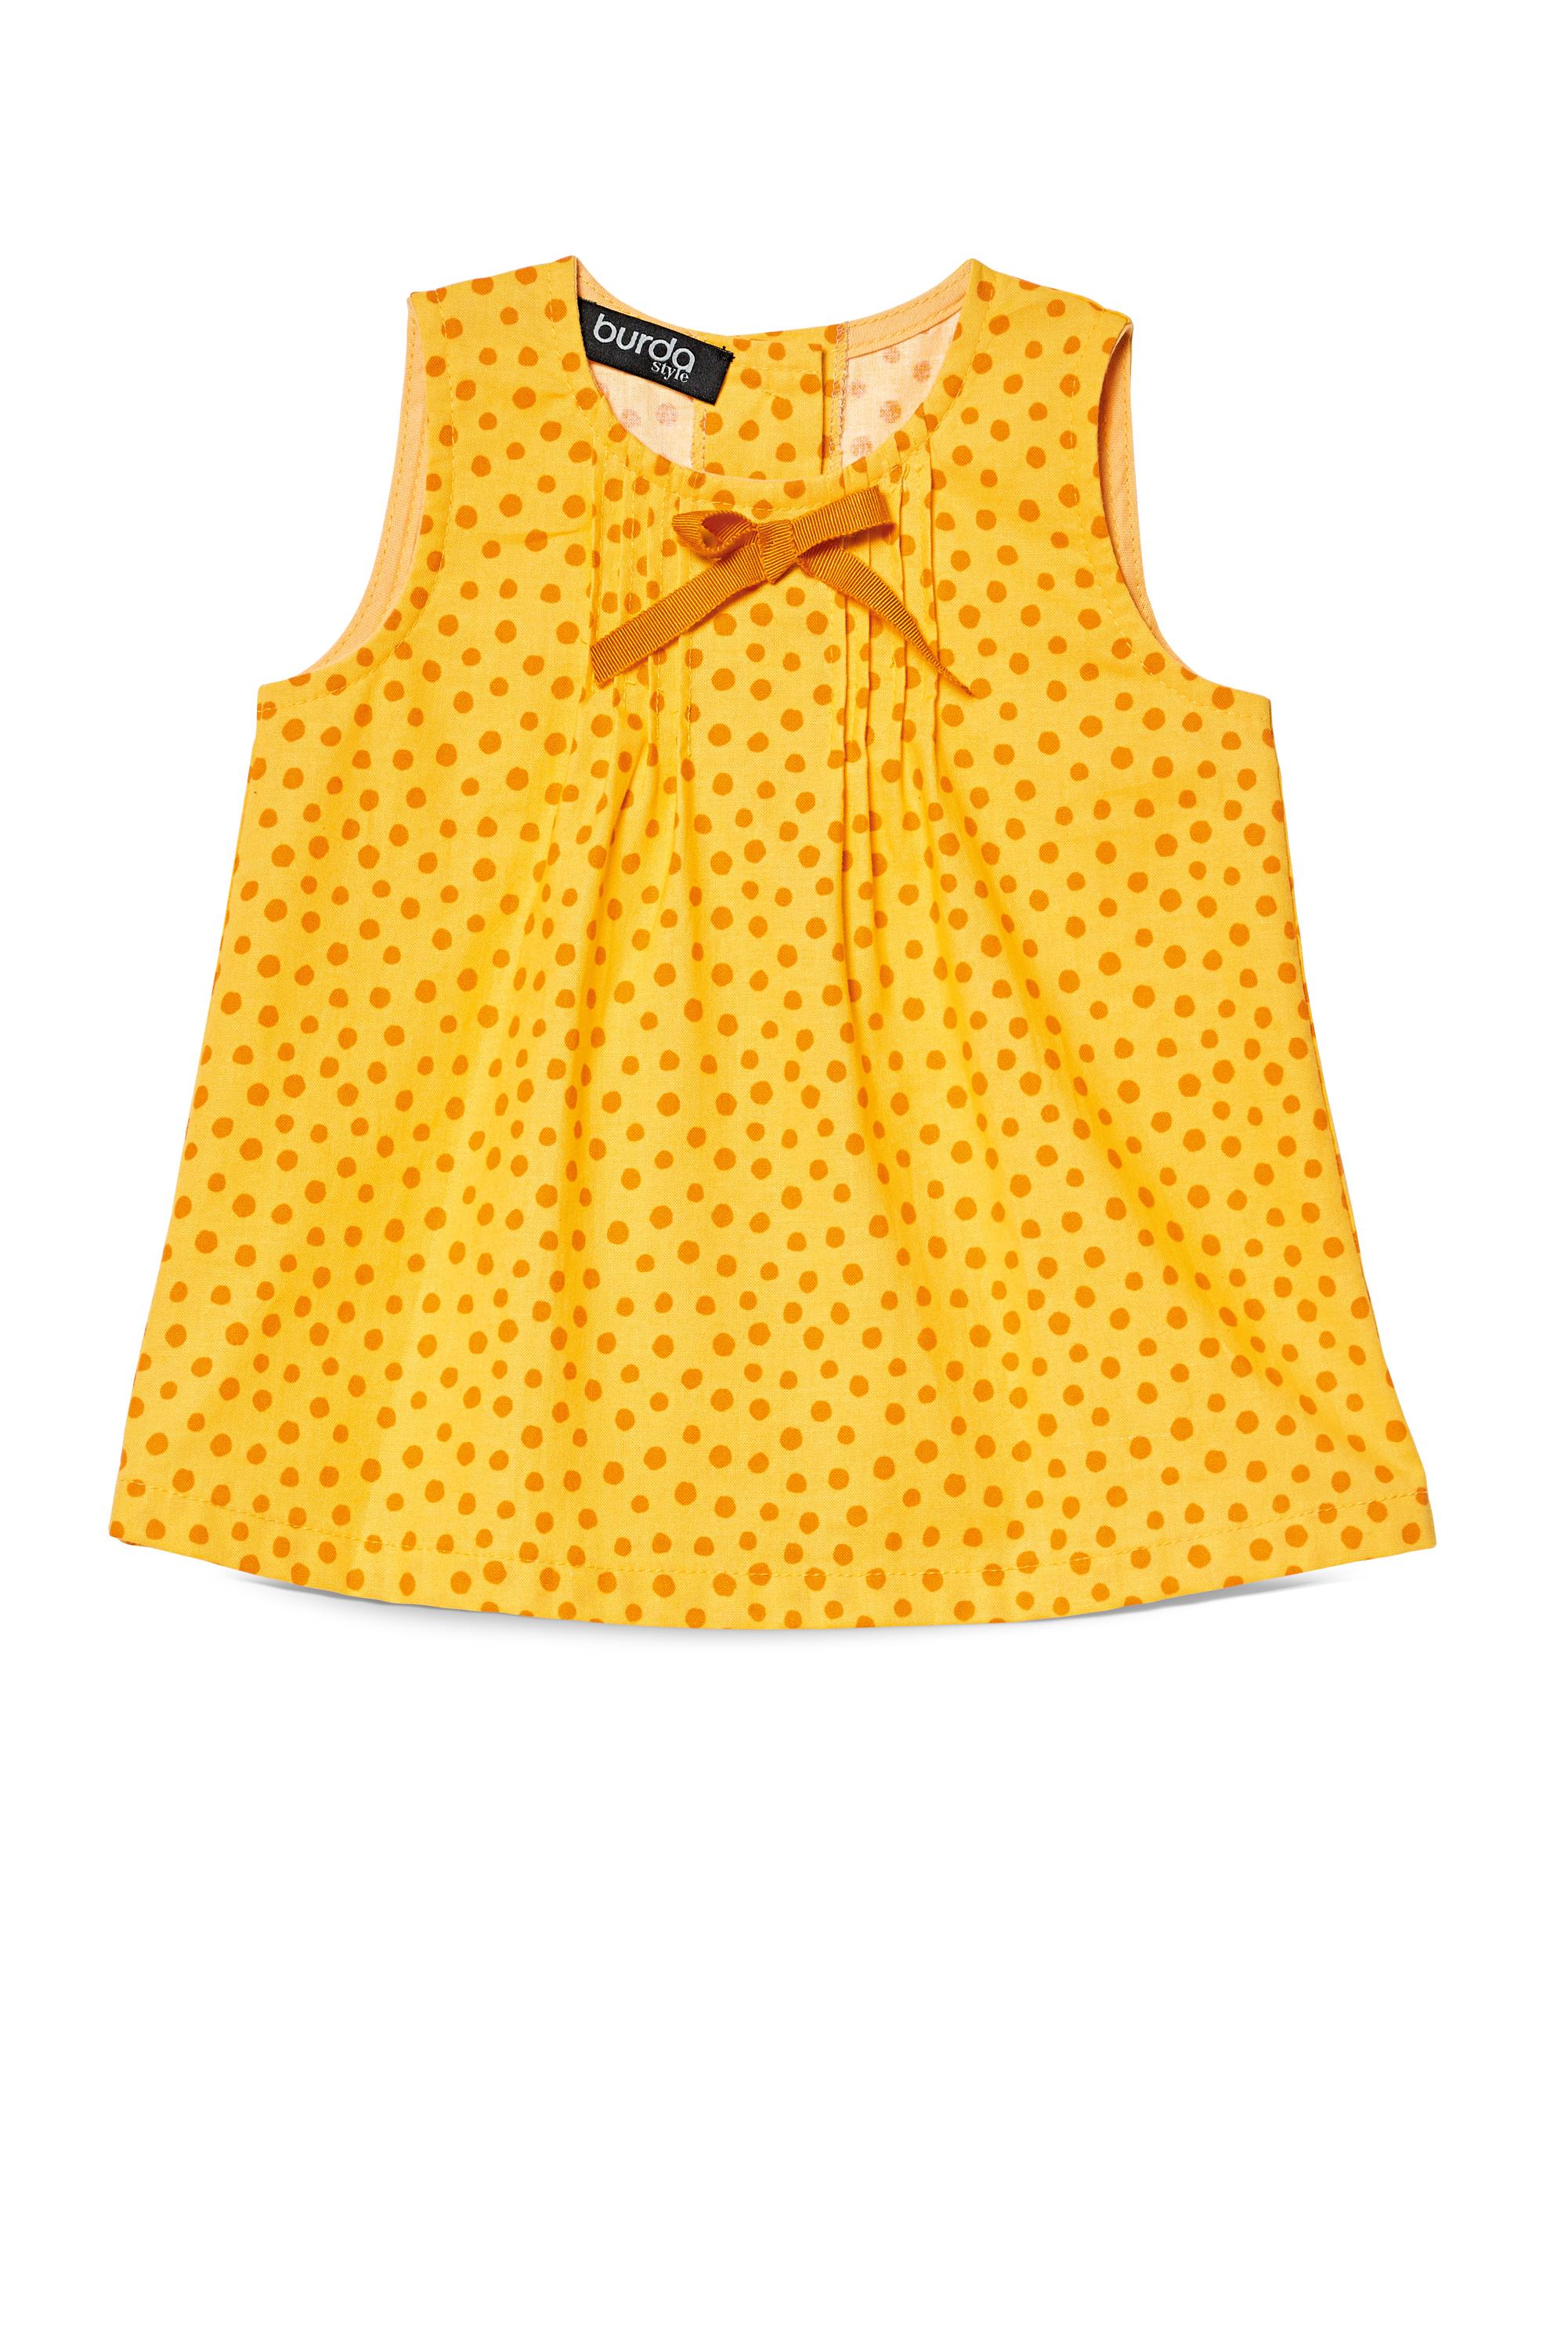 Burda B9358 Baby Dress, Top and Panties